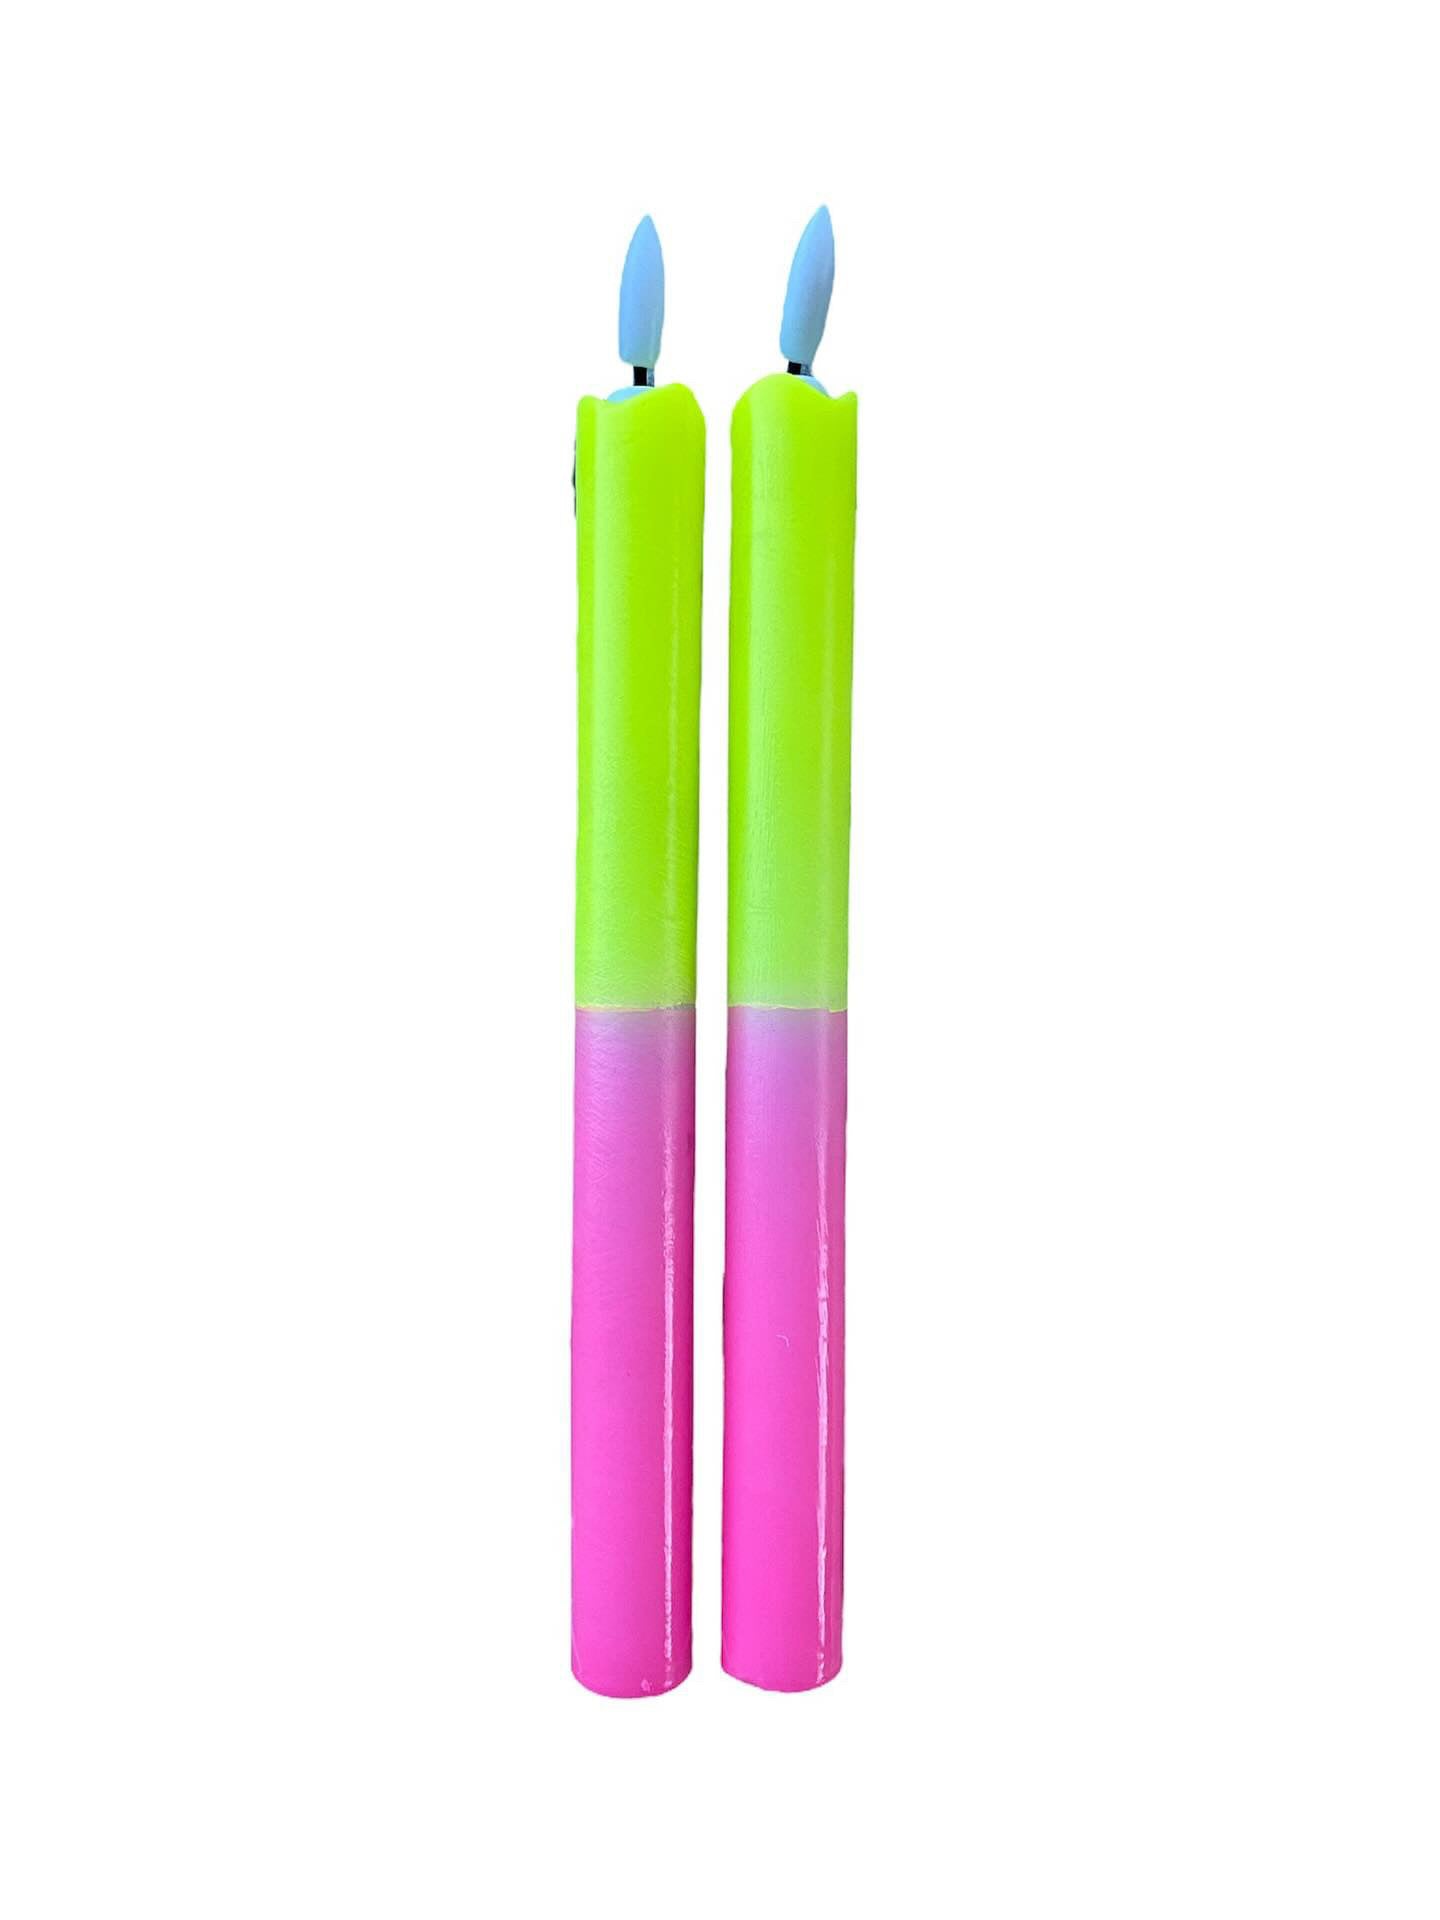 LED Kaarsen dip dye geel roze (2 stuks) - RUBY Conceptstore 